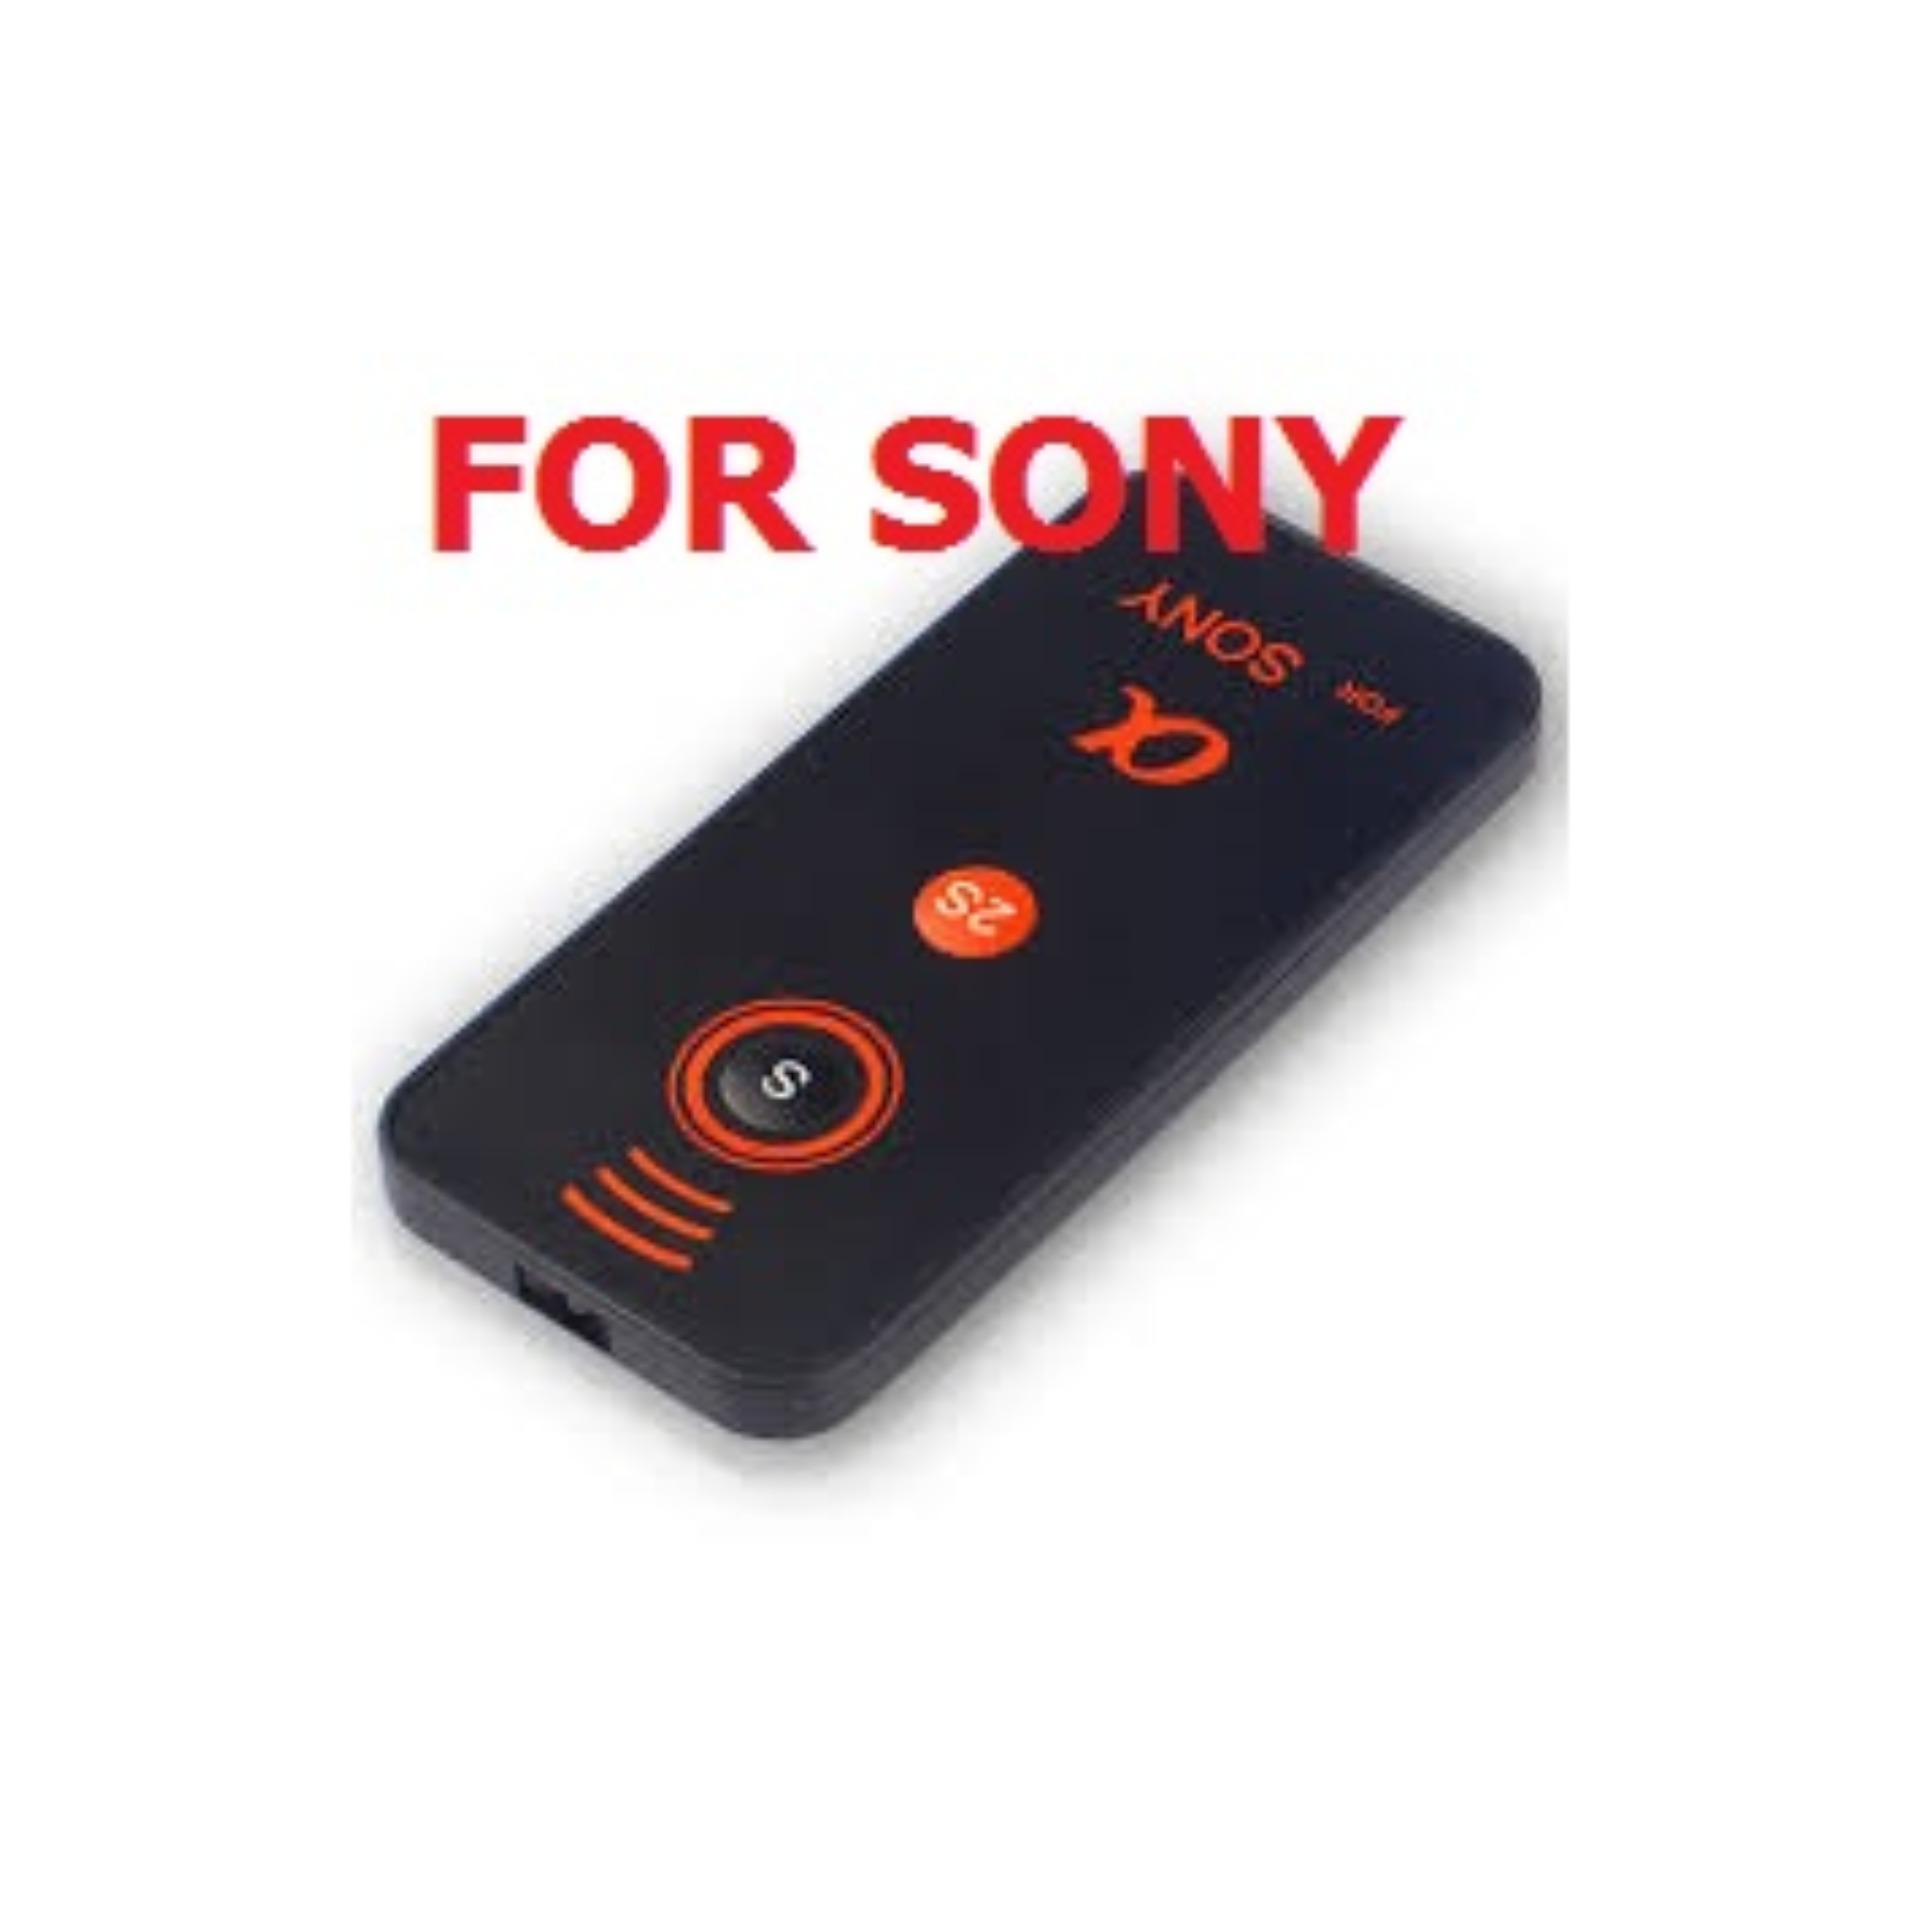 Camera Infrared Wireless Remote รีโมทไร้สาย สำหรับกล้องโซนี่ Sony